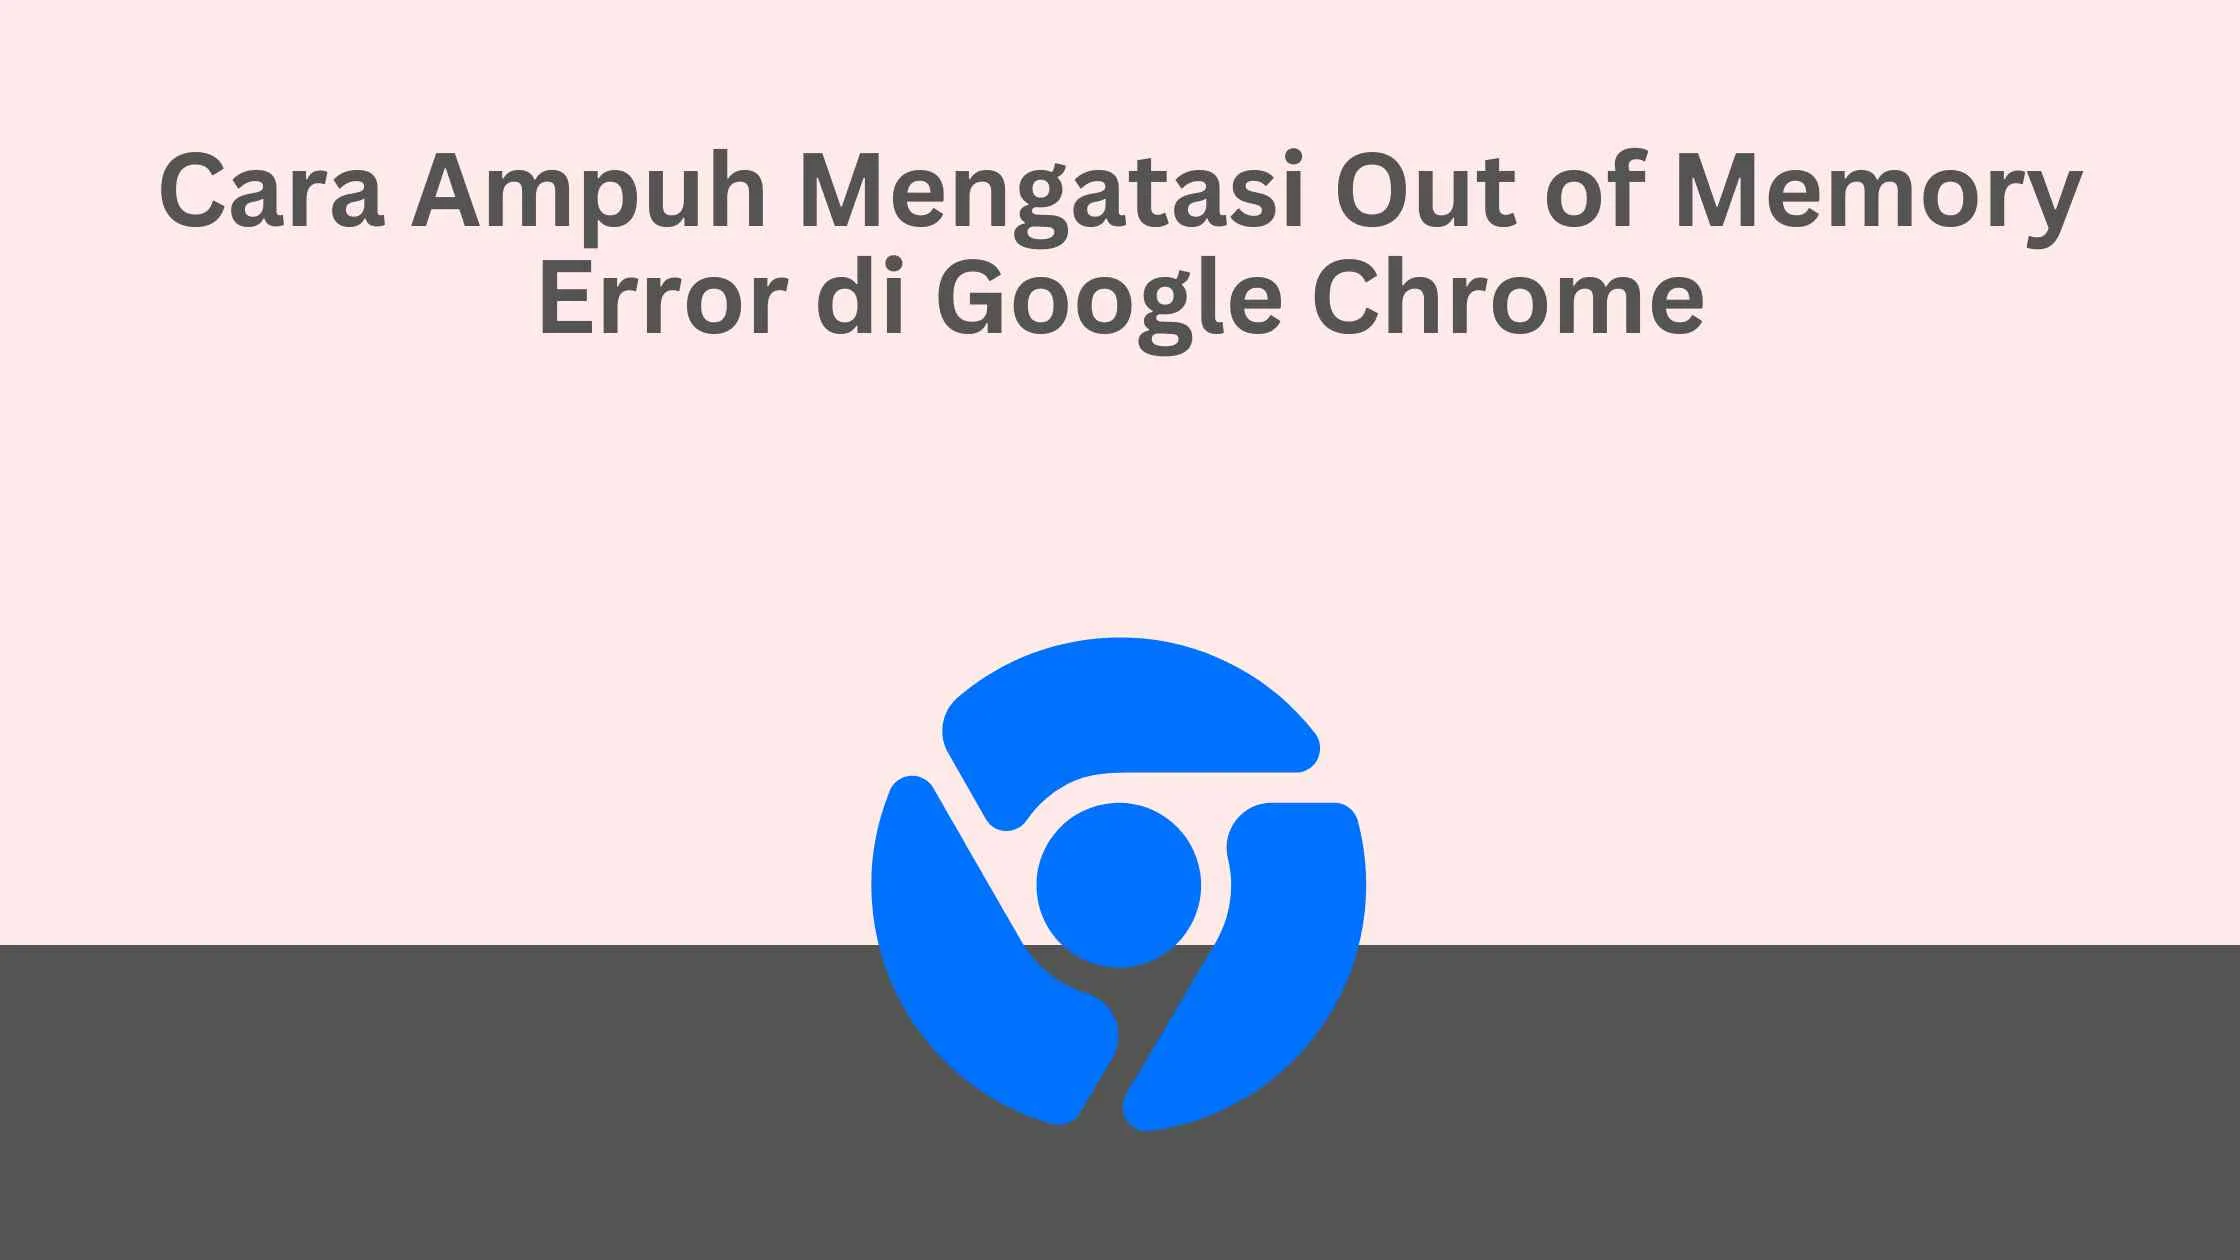 Cara Ampuh Mengatasi Out of Memory Error di Google Chrome